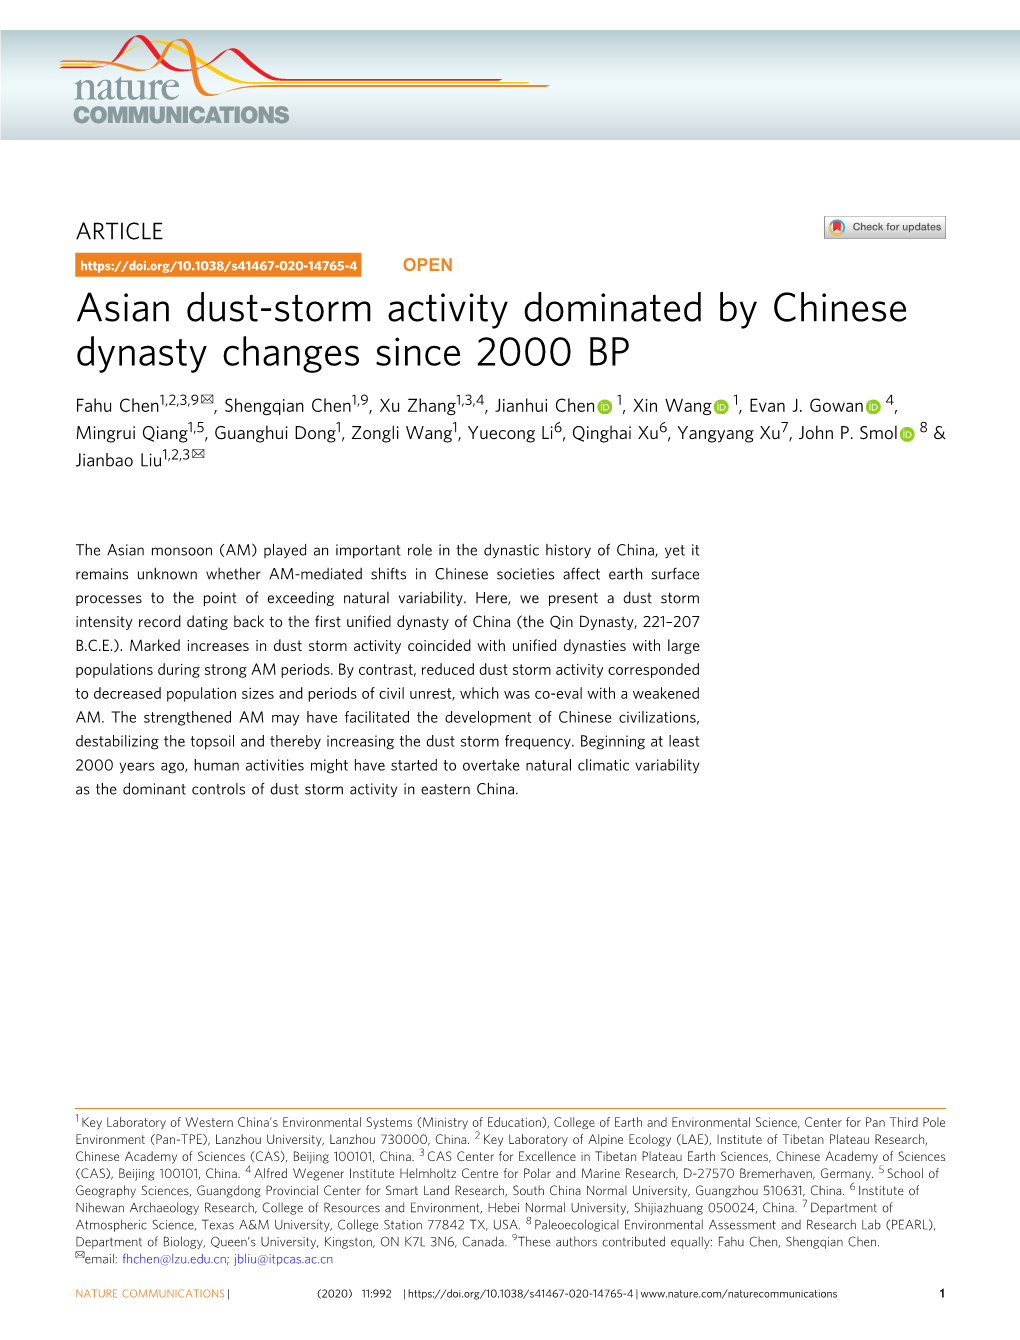 Asian Dust-Storm Activity Dominated by Chinese Dynasty Changes Since 2000 BP ✉ Fahu Chen1,2,3,9 , Shengqian Chen1,9, Xu Zhang1,3,4, Jianhui Chen 1, Xin Wang 1, Evan J